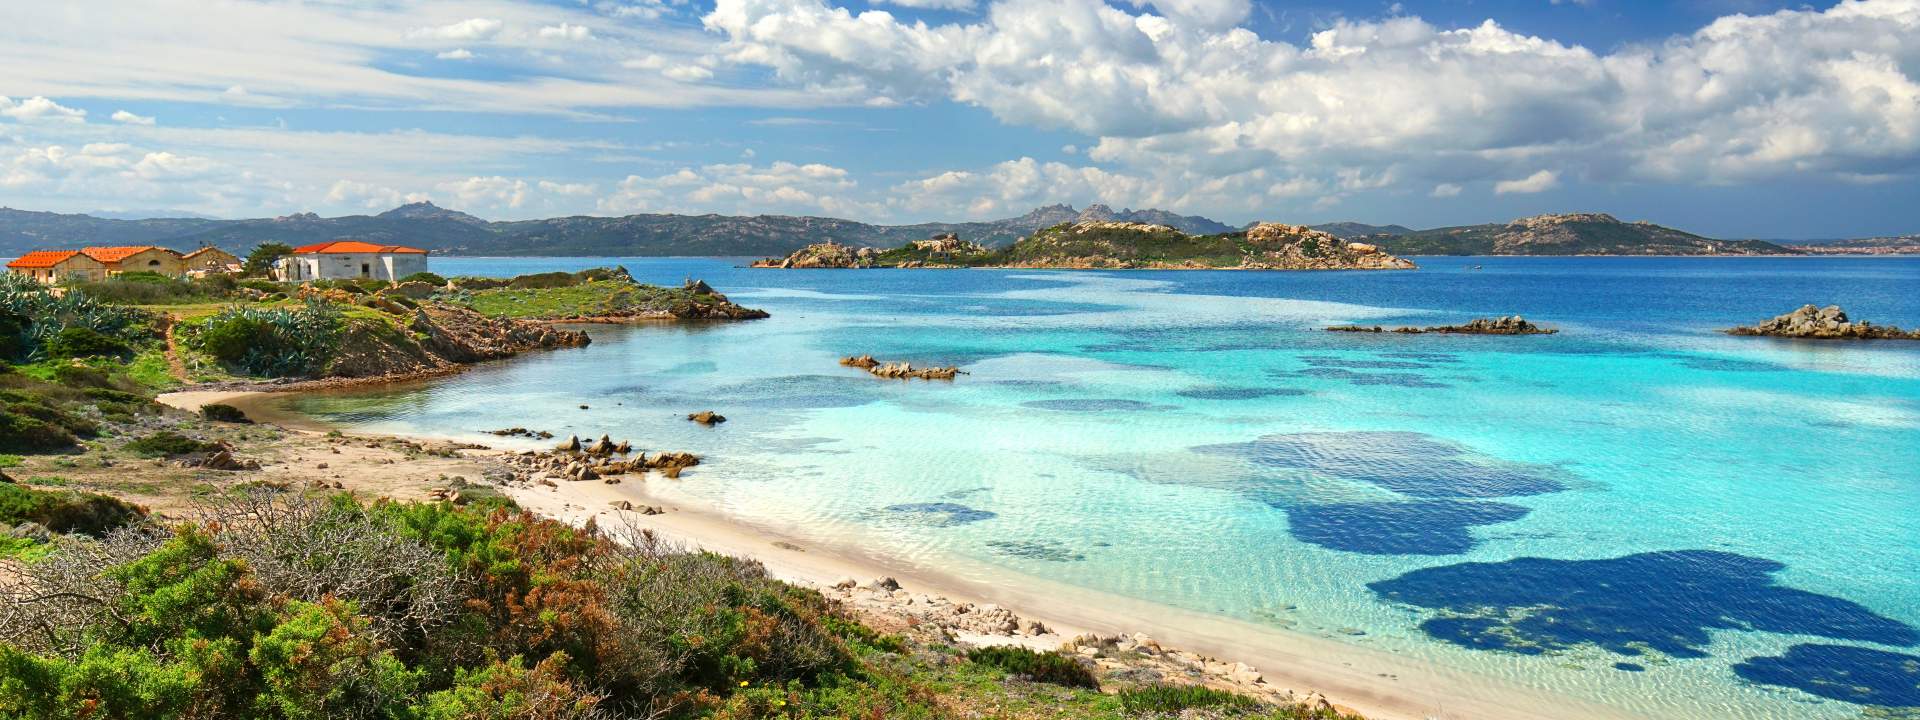 Une croisière privative entre les plus belles îles de Sardaigne & Corse